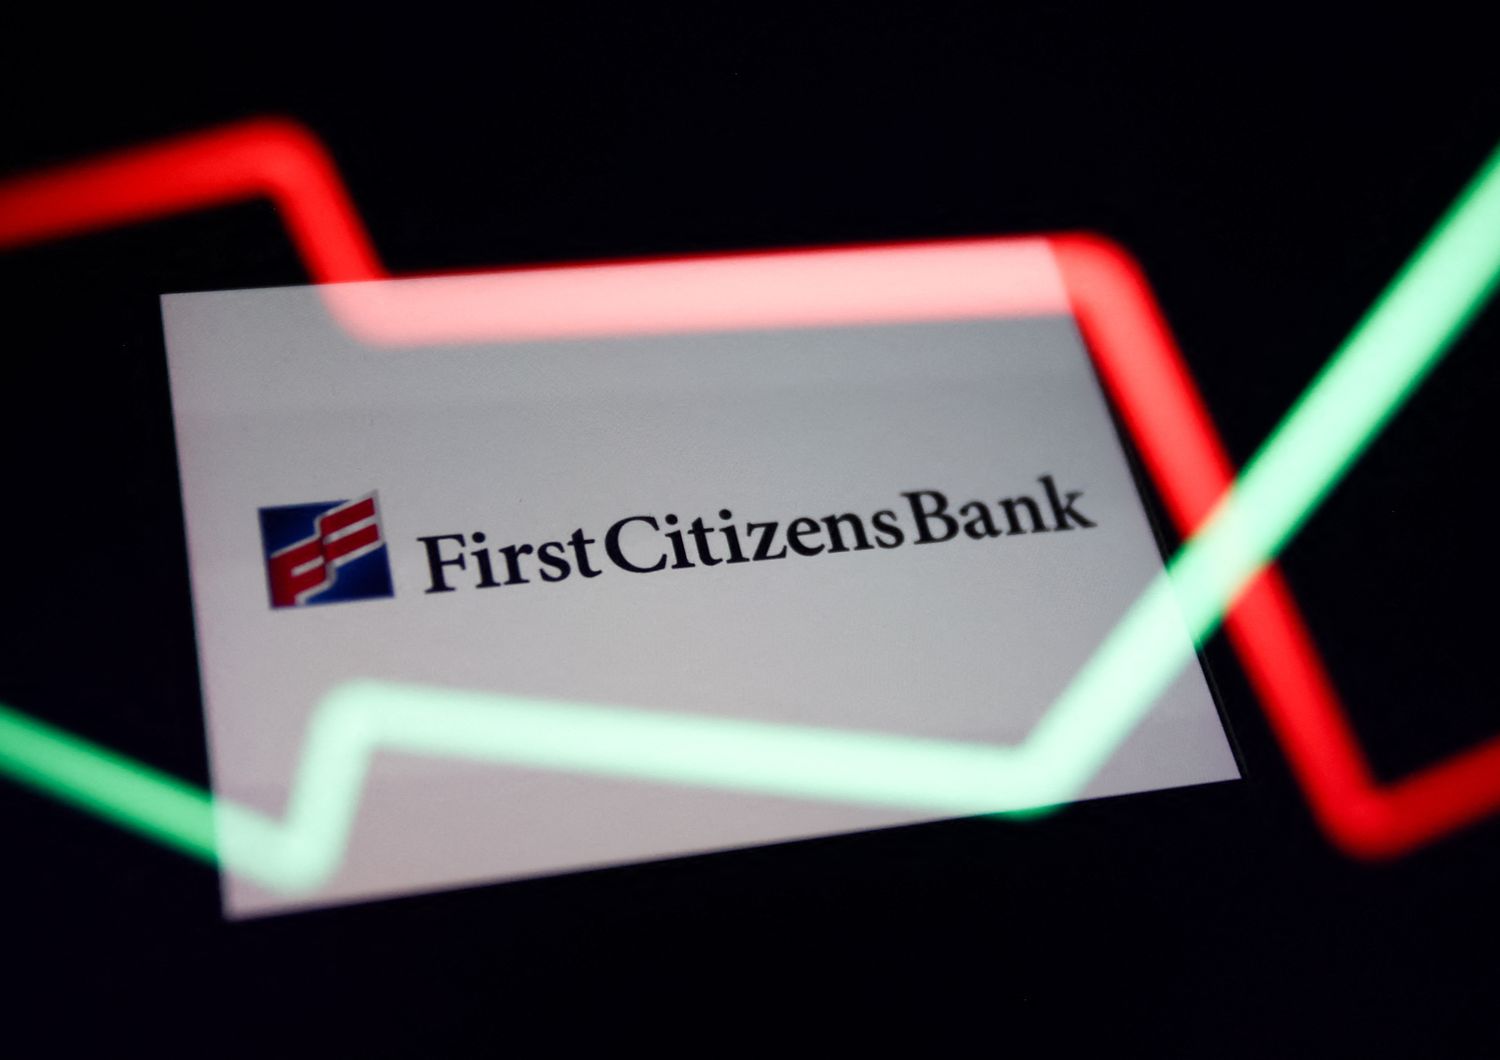 First Citizen Bank